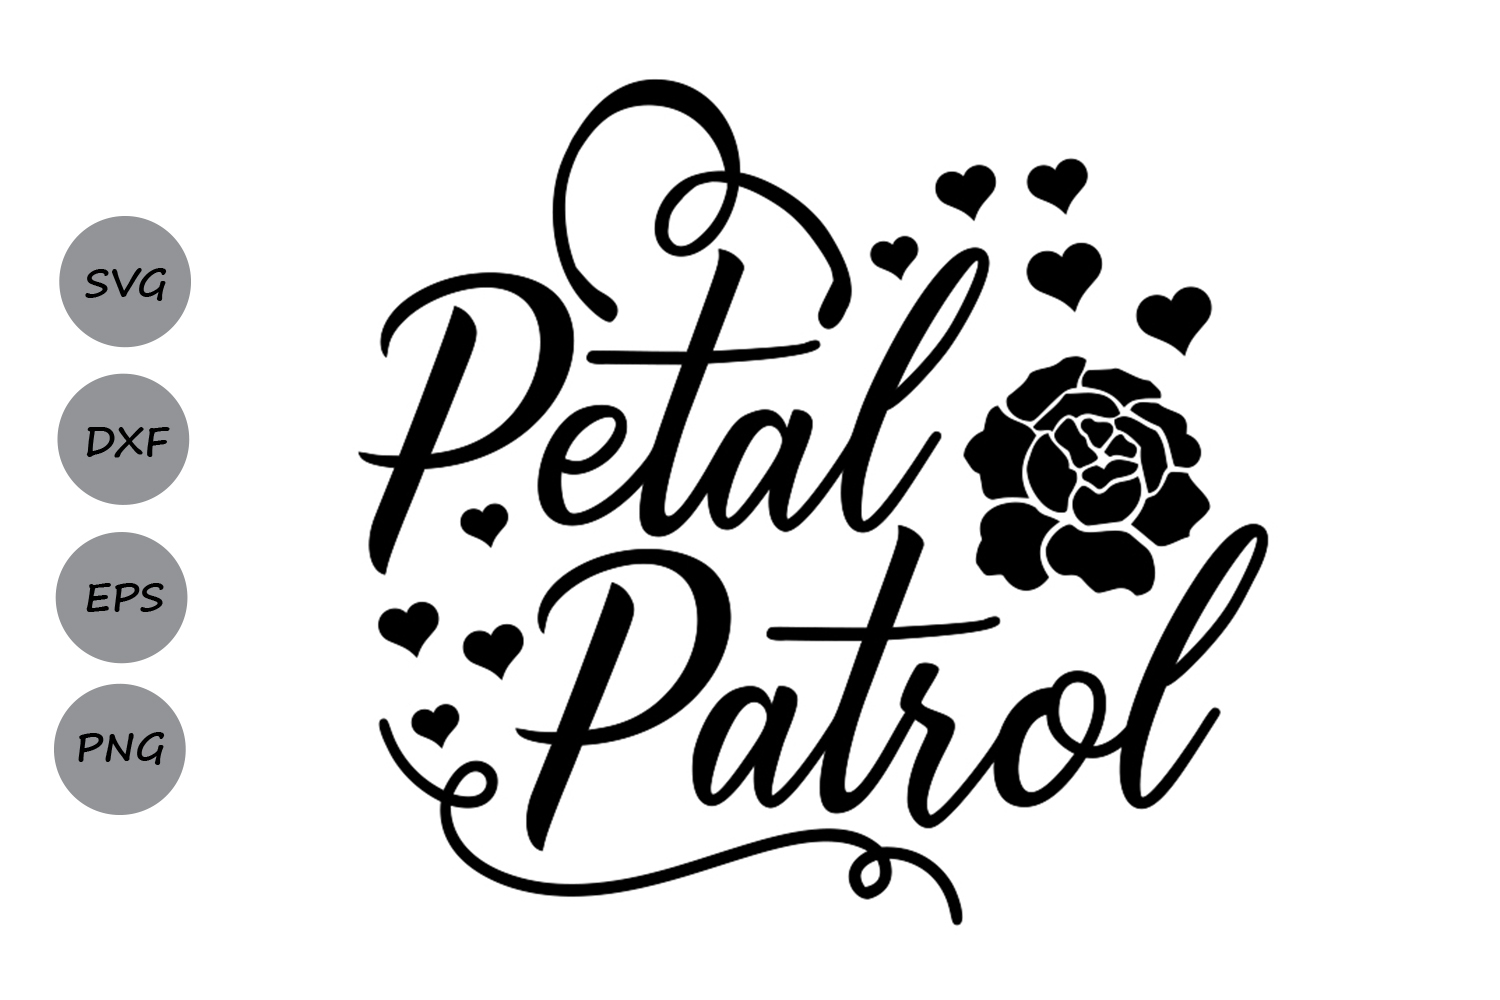 Download Petal Patrol svg, Wedding svg, Bride svg, Flower girl svg ...